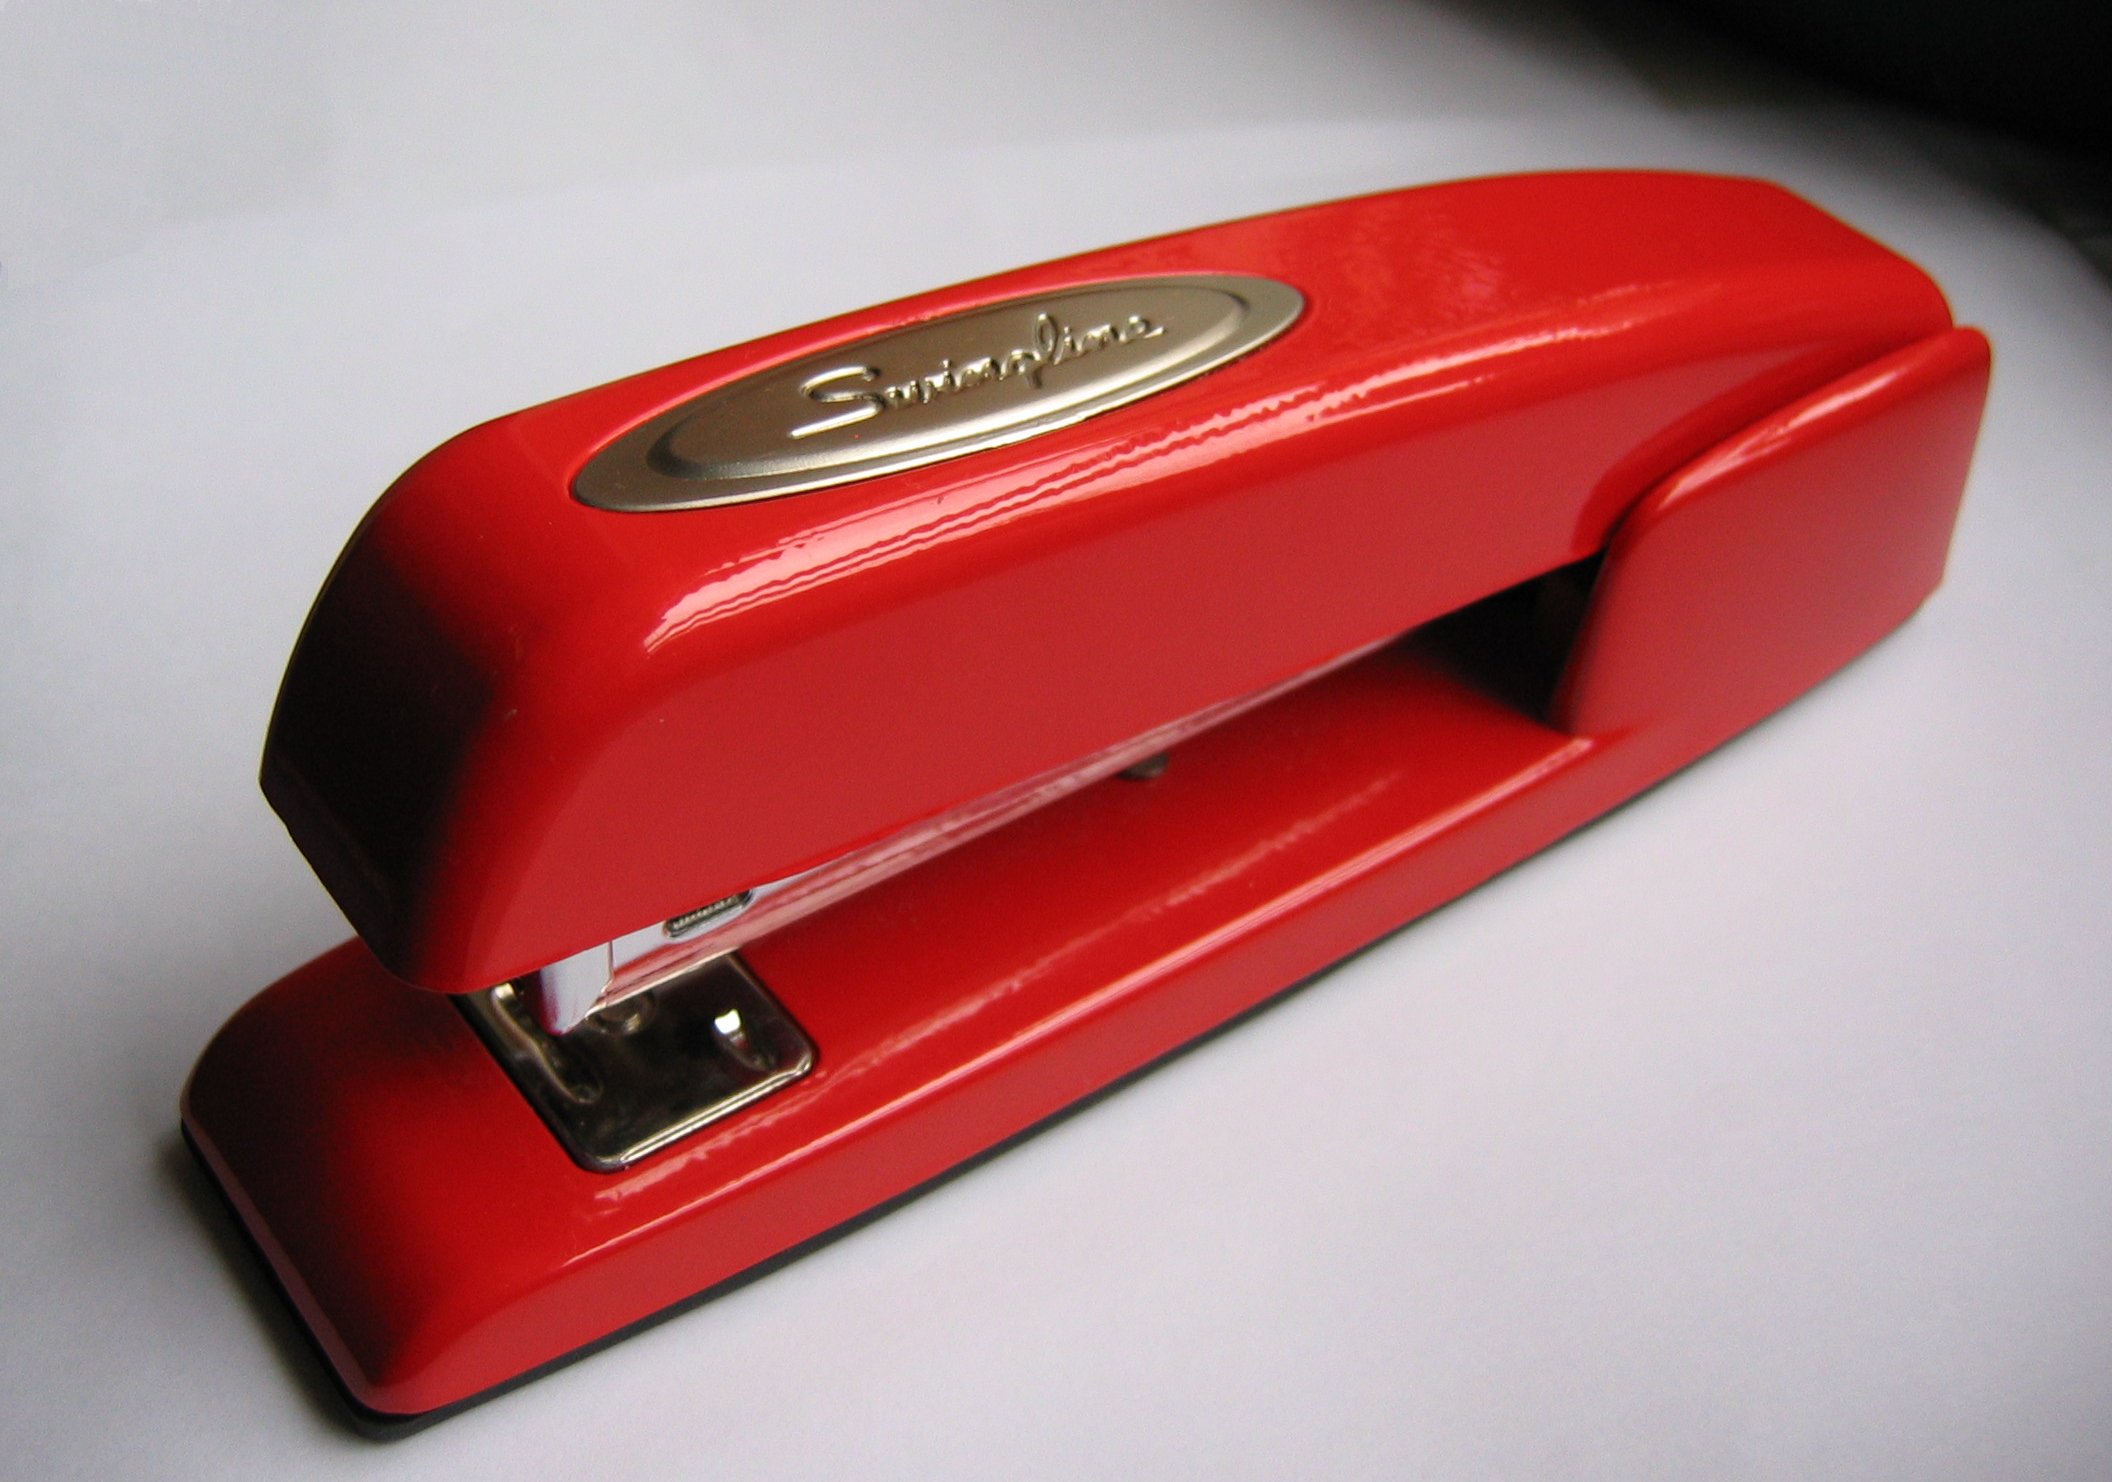 stapler-swingline-red1.jpg